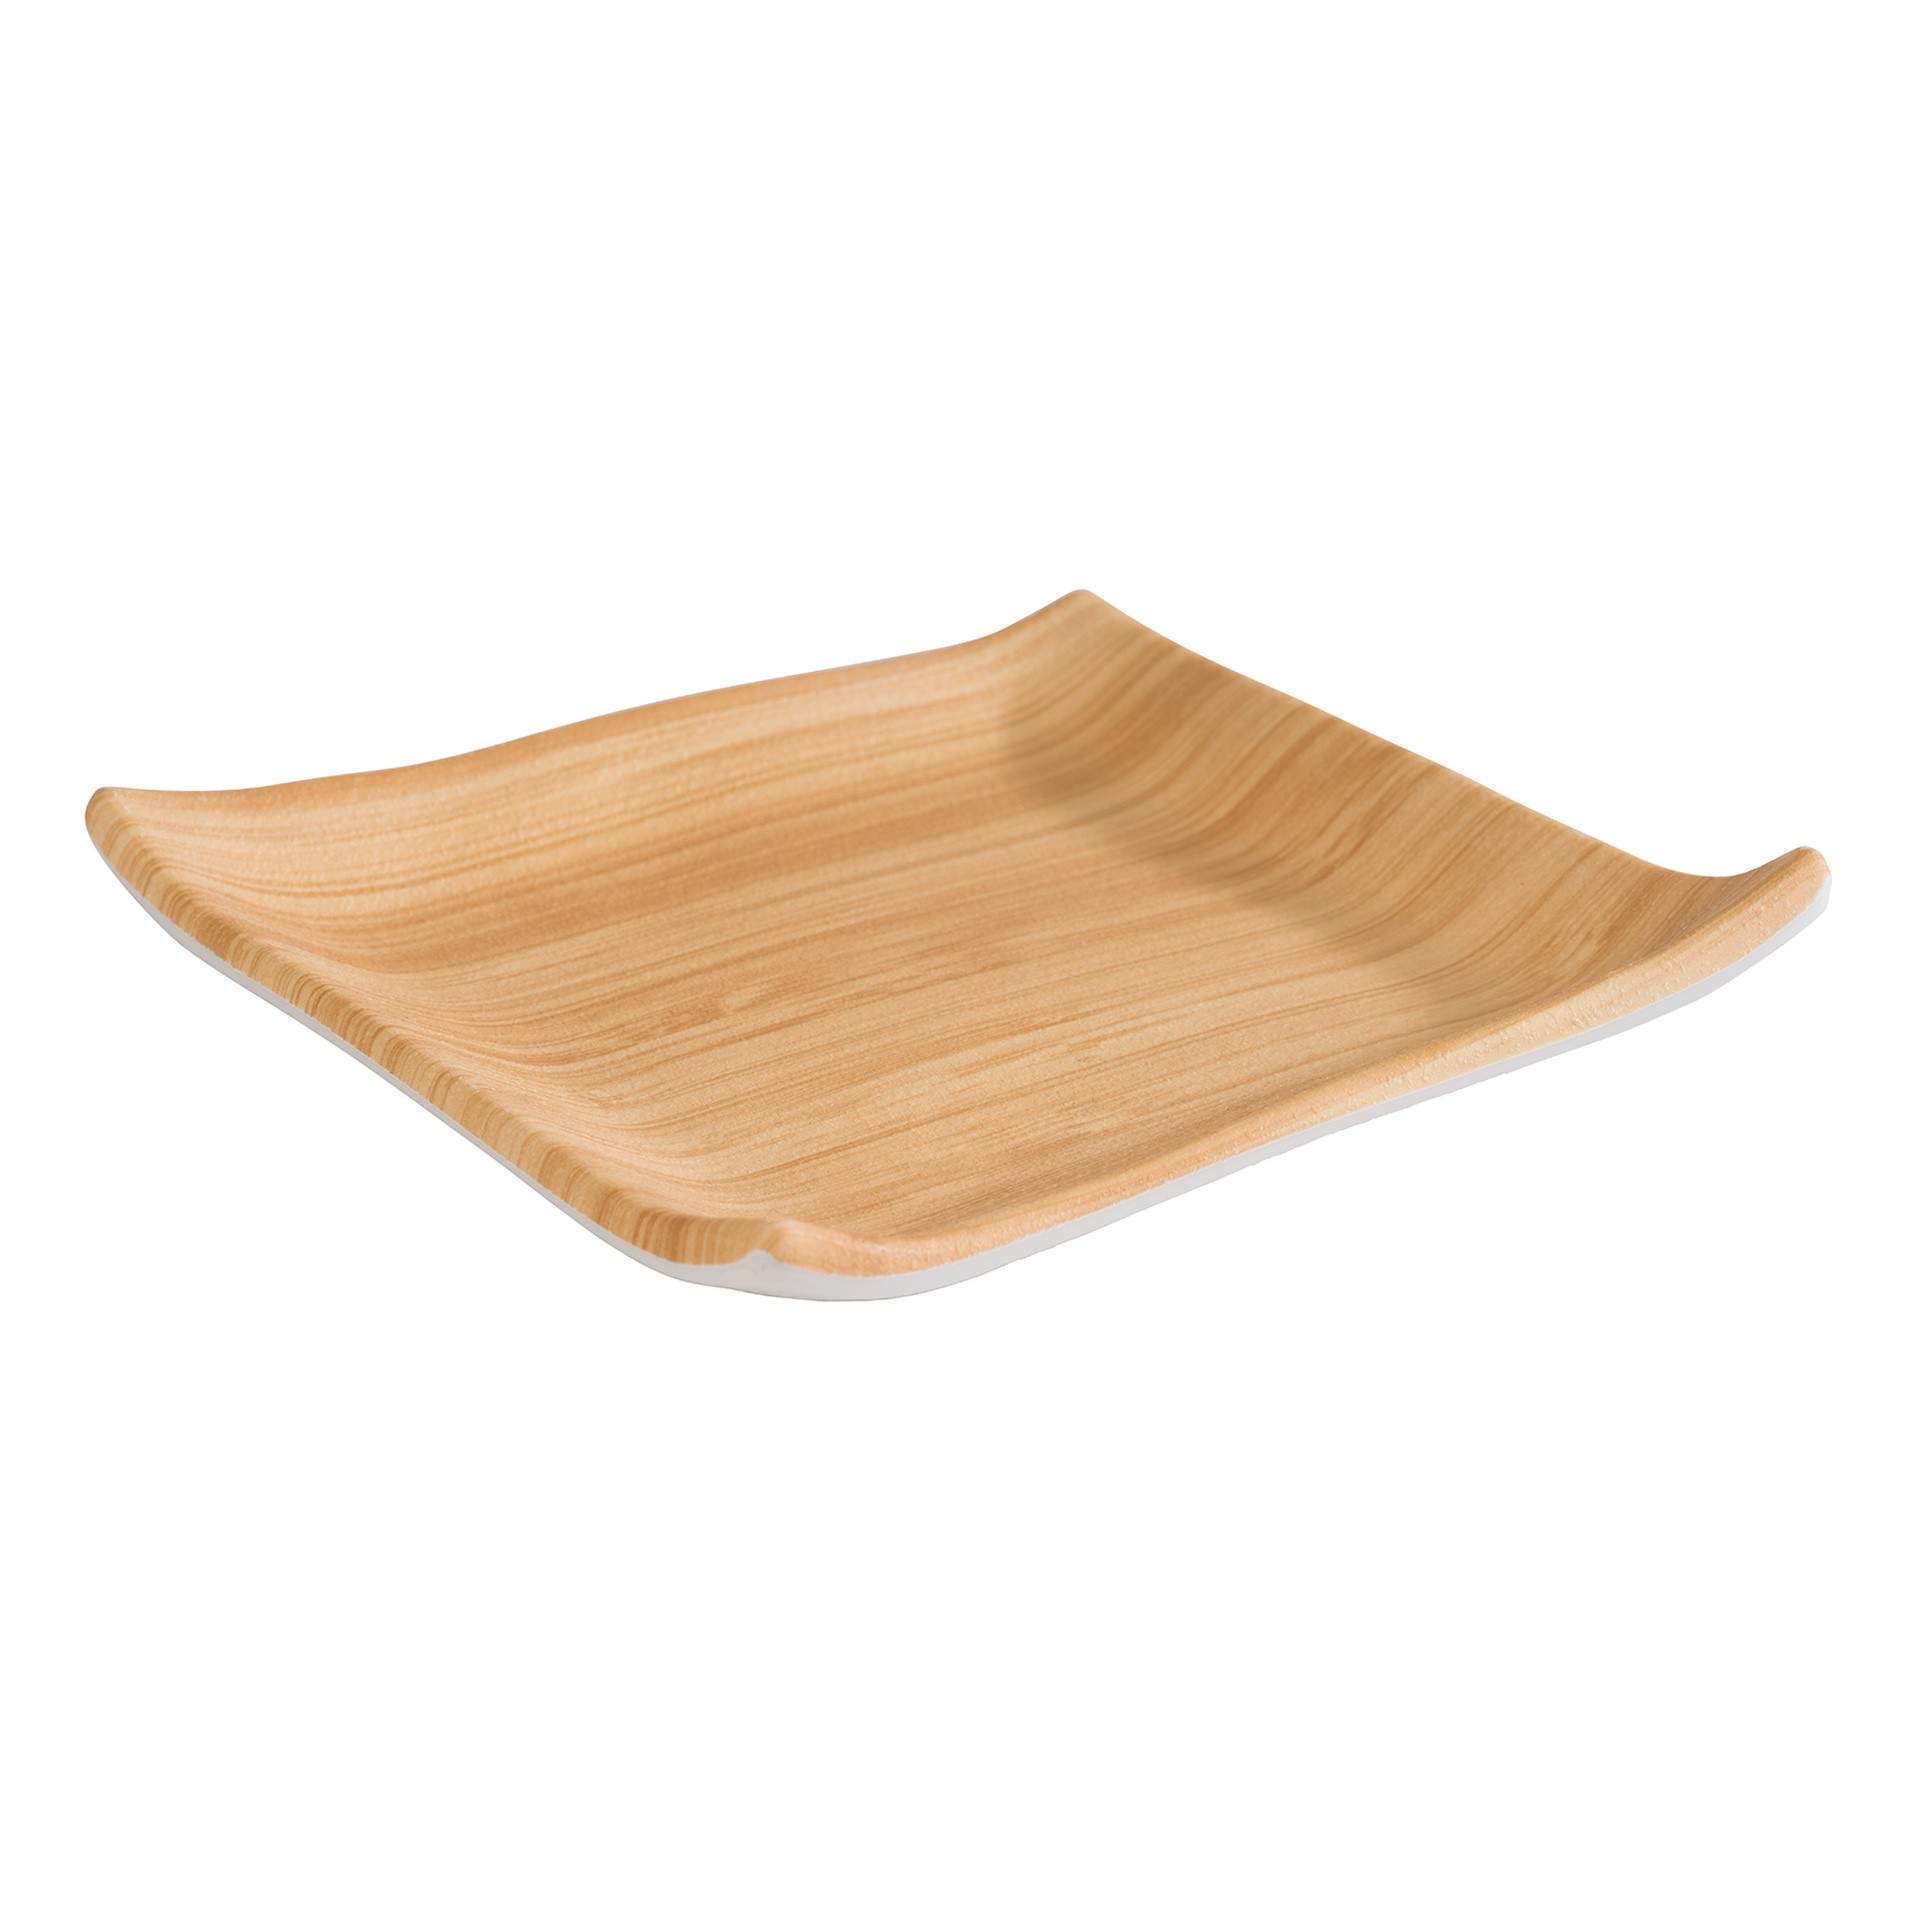 Tablett - Serie Bamboo - bambus / weiß - rechteckig - Abm. 14,5 x 14,5 x 2,5 cm - Melamin - 84804-B